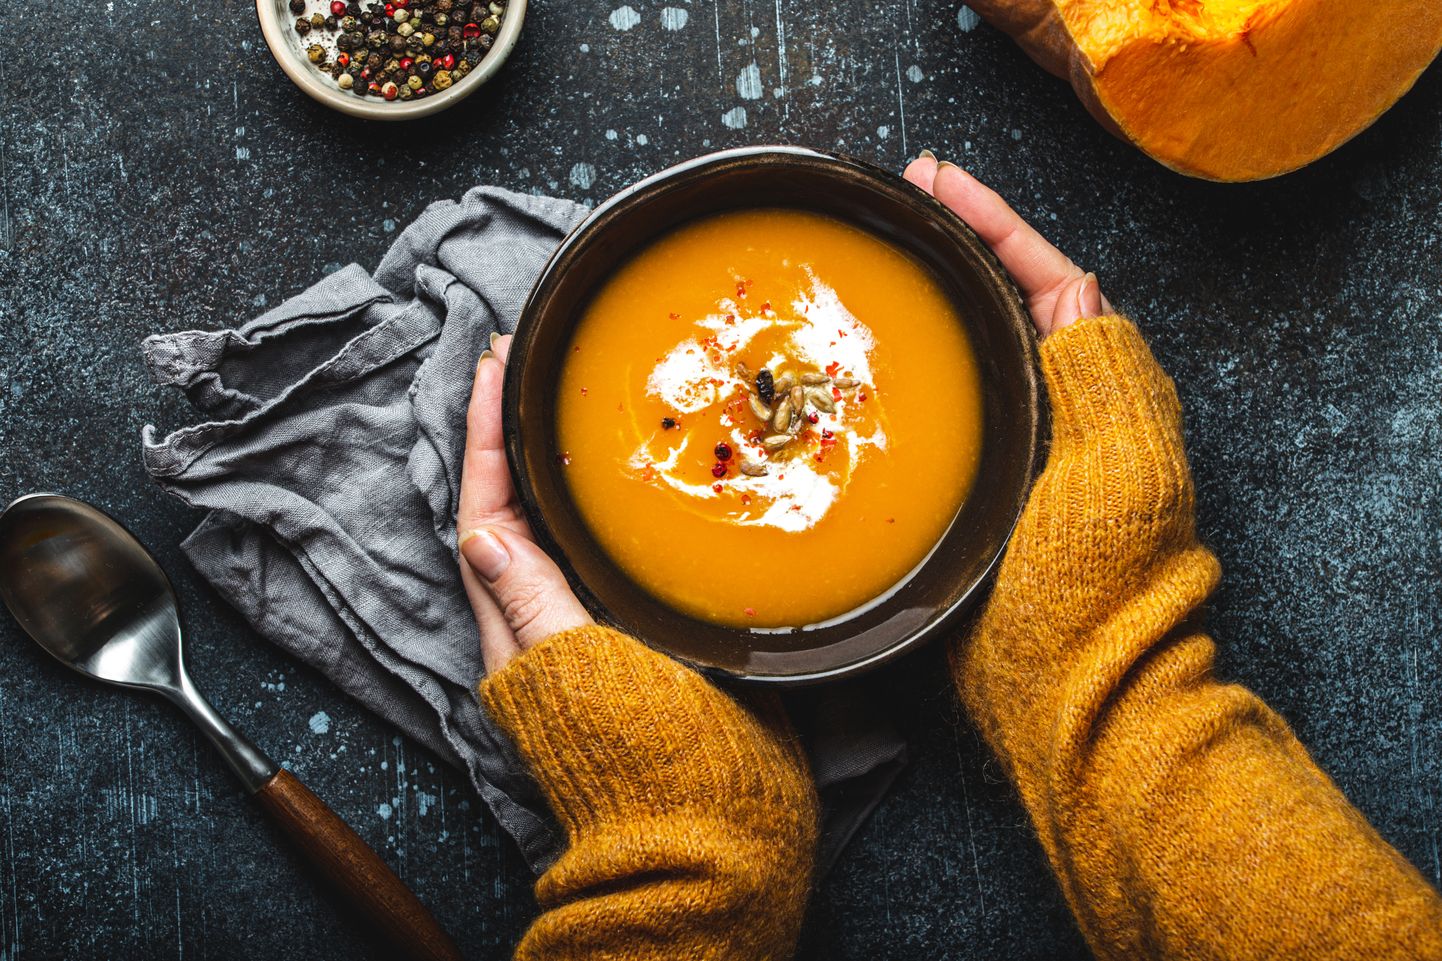 Тыквенный суп в холодное время года - хорошая еда! Иллюстративное фото